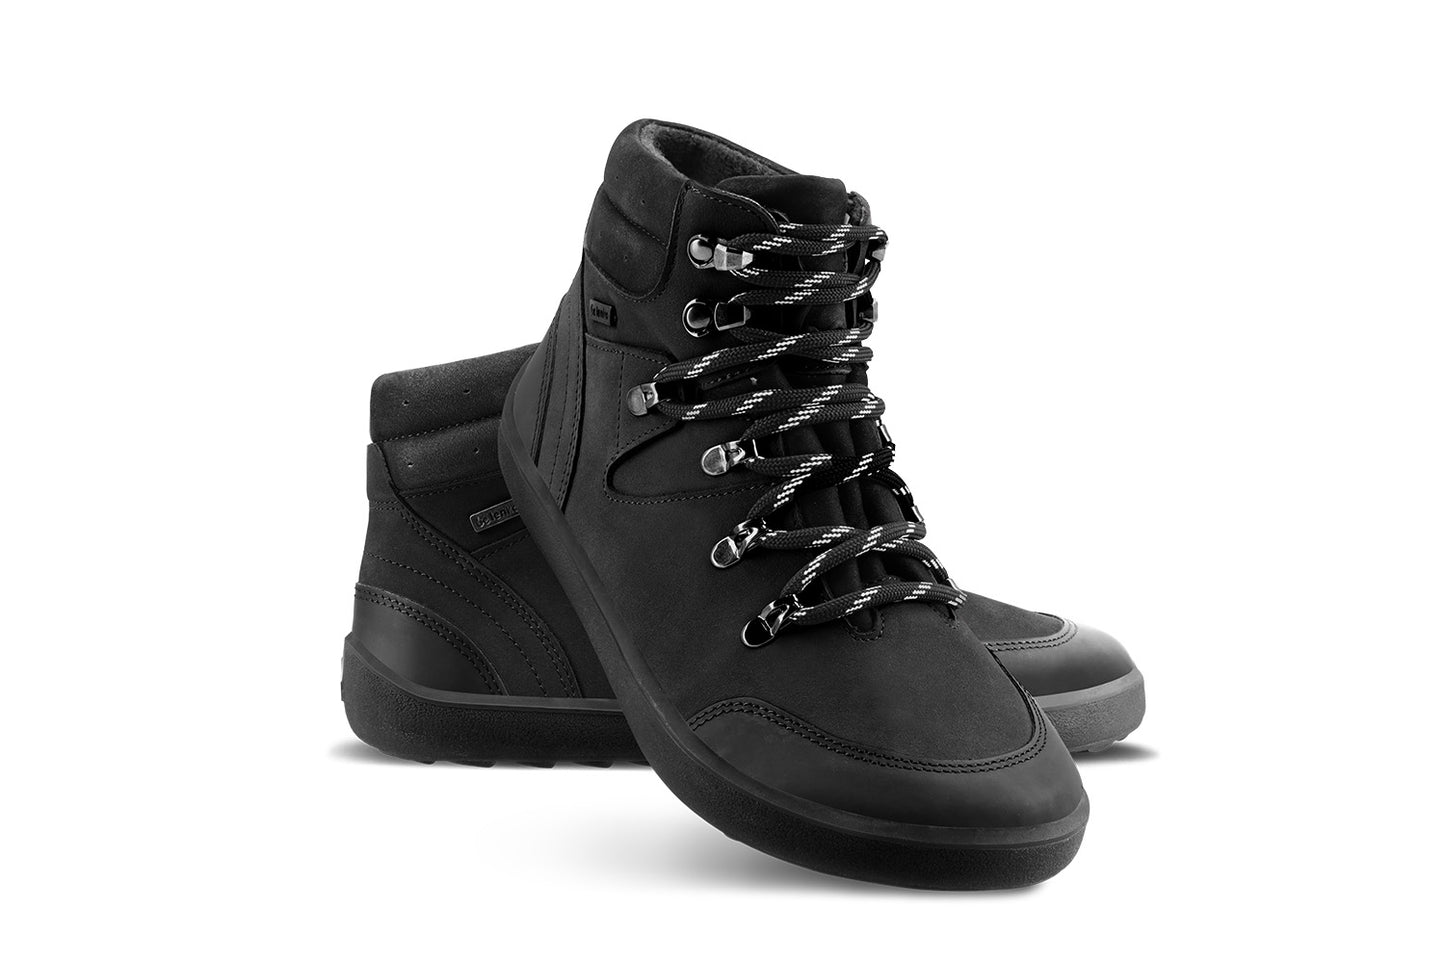 Barefoot Shoes Be Lenka Ranger 2.0 - All Black 1 OzBarefoot Australia